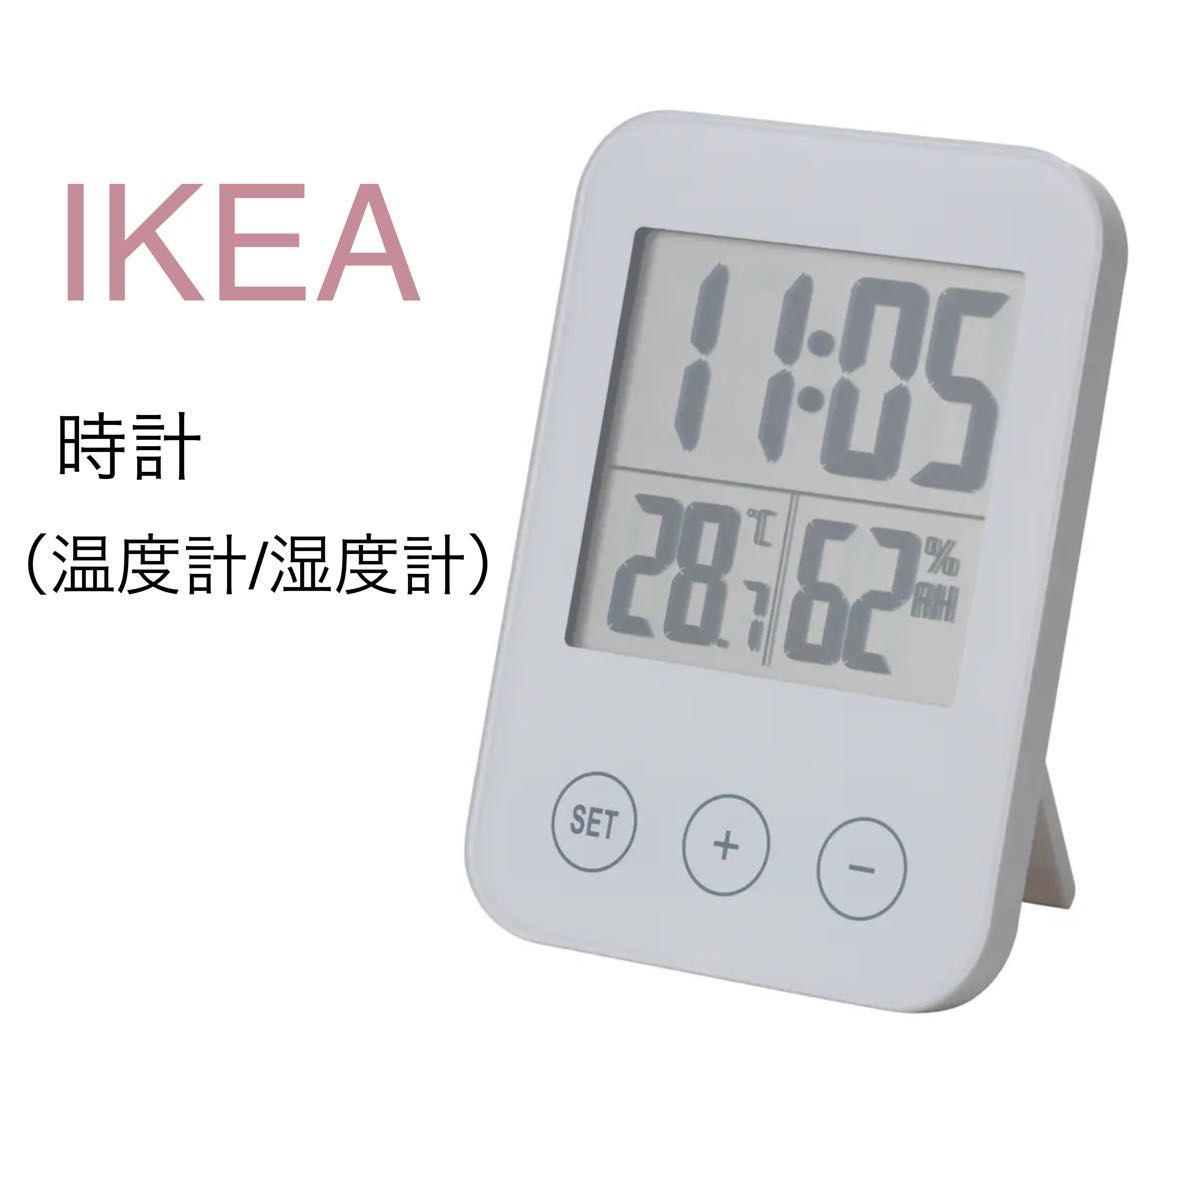 【新品】IKEA イケア 時計 ホワイト（スロッティス）温度湿度計 温度計湿度計 温度計 湿度計 温湿度計 置時計